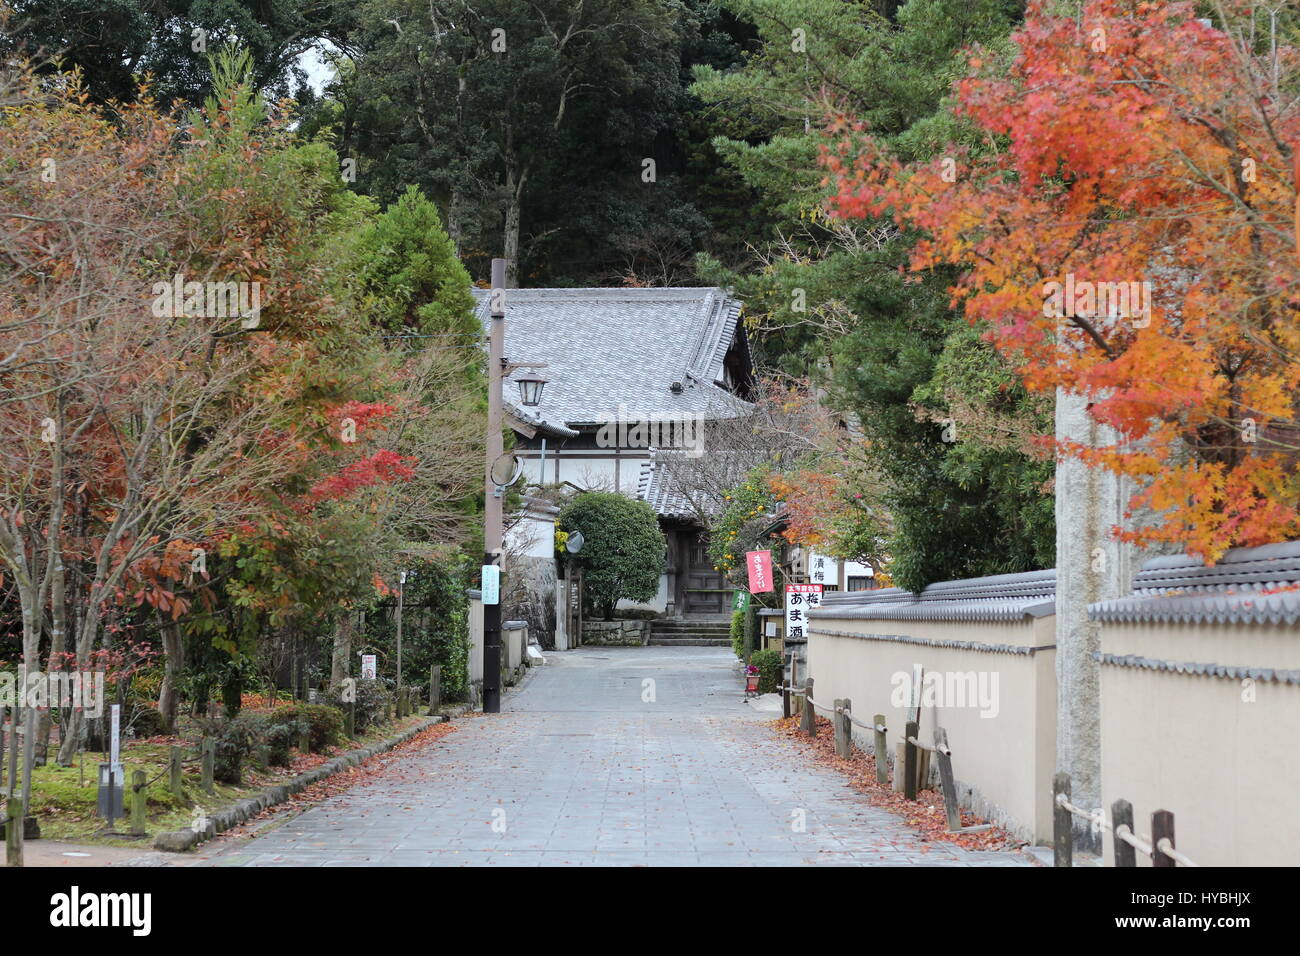 Arbres aux couleurs de l'allée et un aperçu d'une maison traditionnelle japonaise dans la distance Banque D'Images